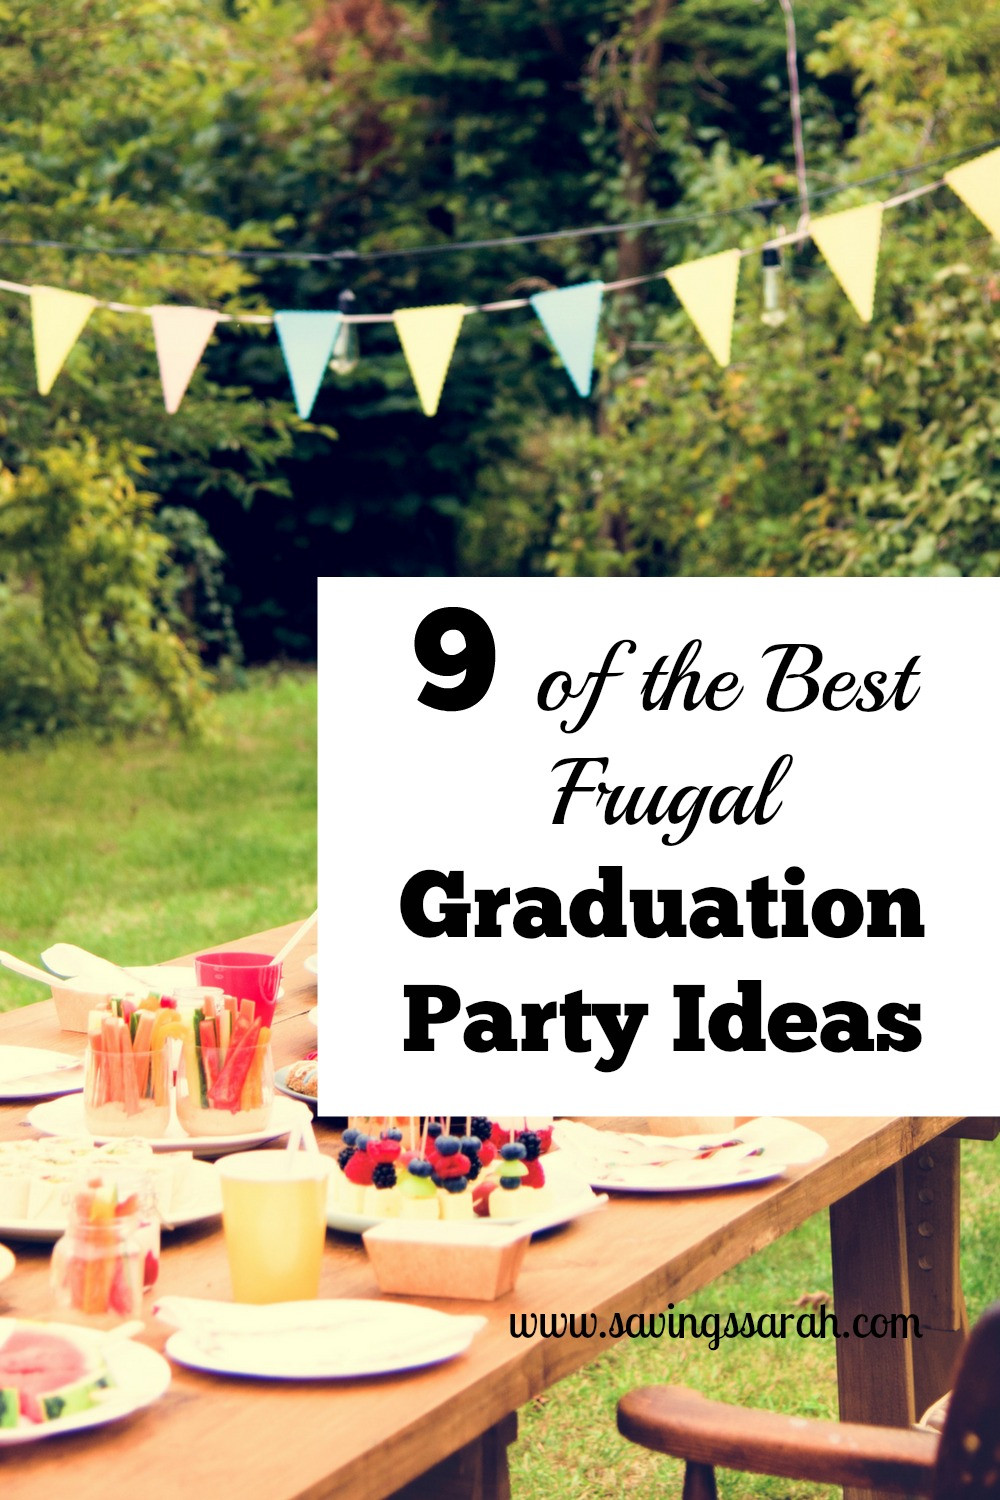 University Graduation Party Ideas
 9 the Best Frugal Graduation Party Ideas Earning and